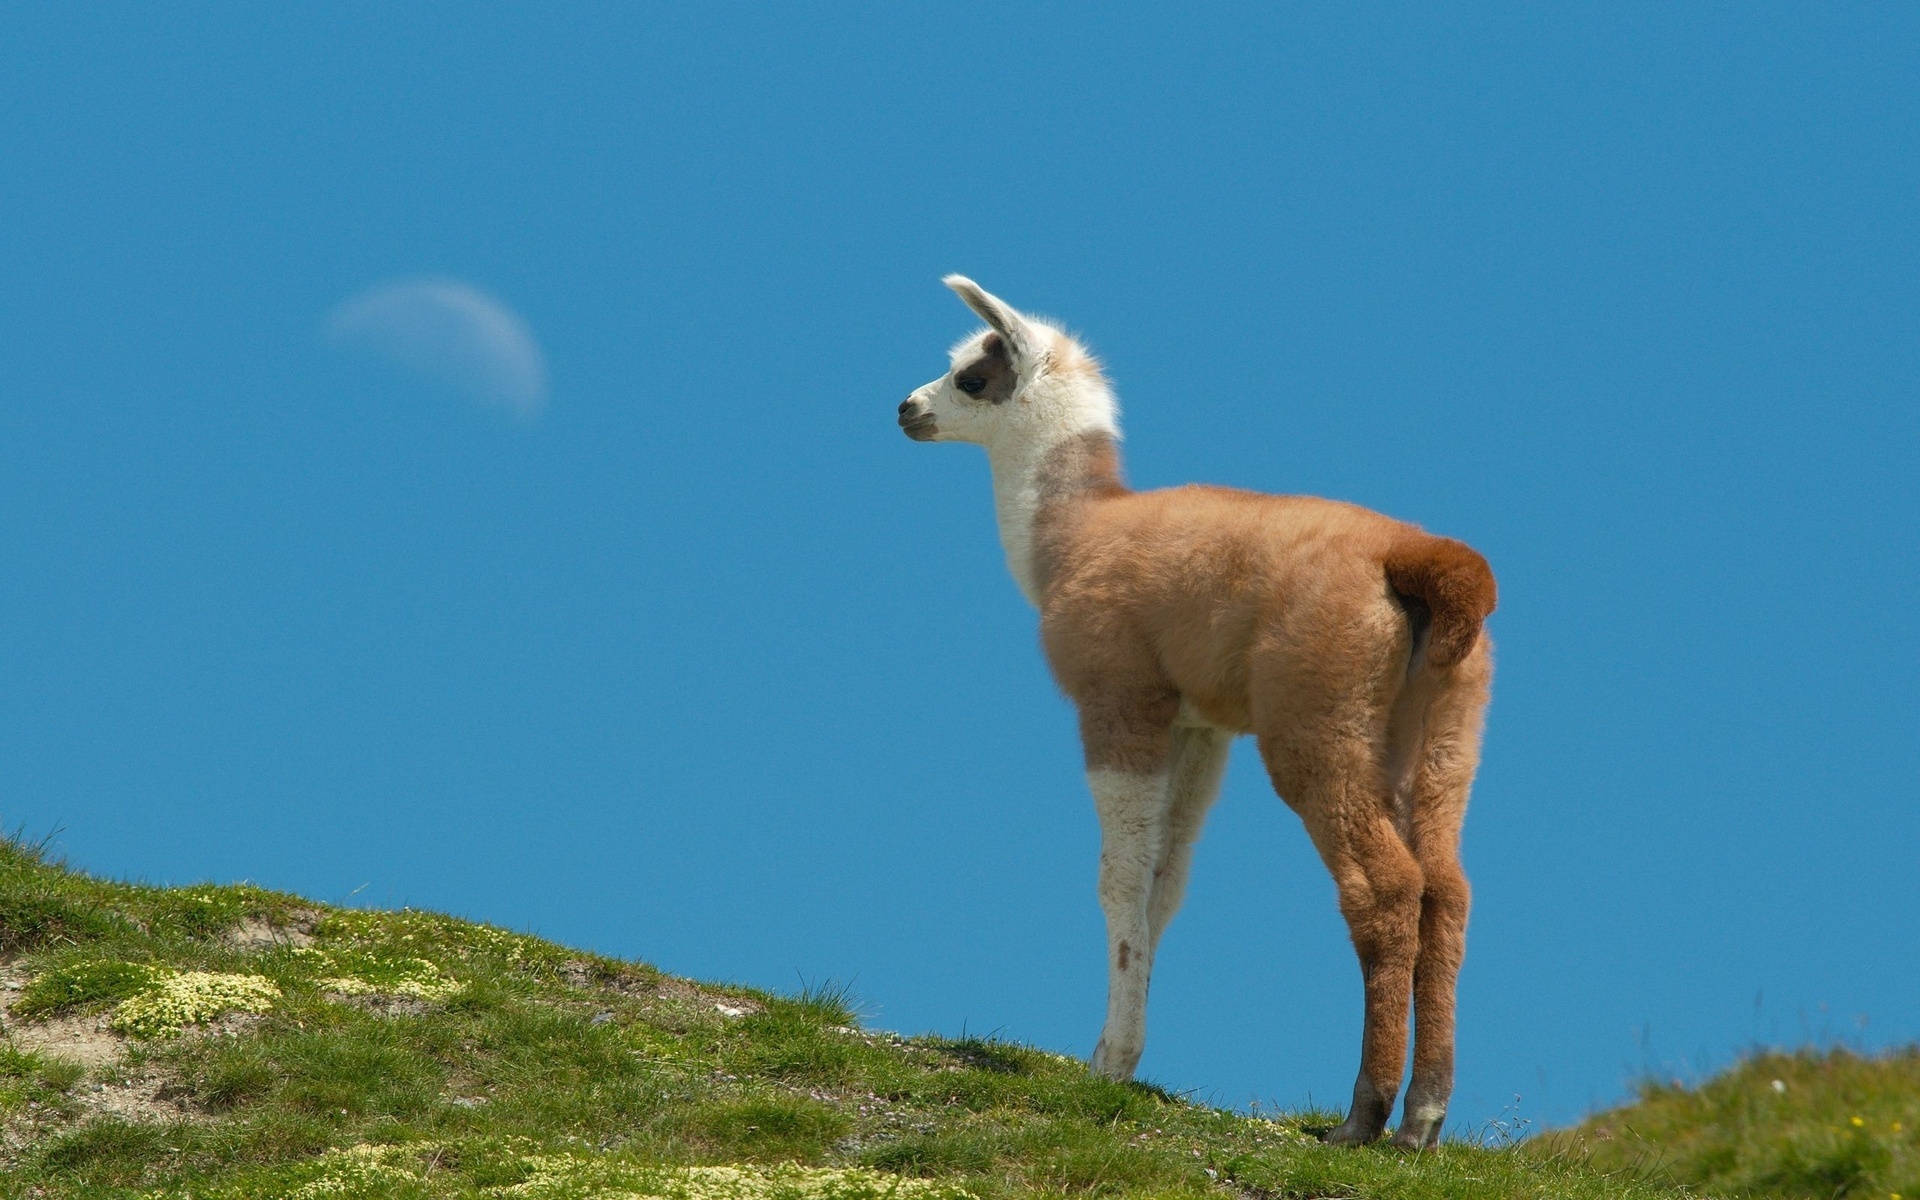 Vibrant 4K llama wallpaper, Stunning animal photography, Llama in its habitat, Llama elegance, 1920x1200 HD Desktop